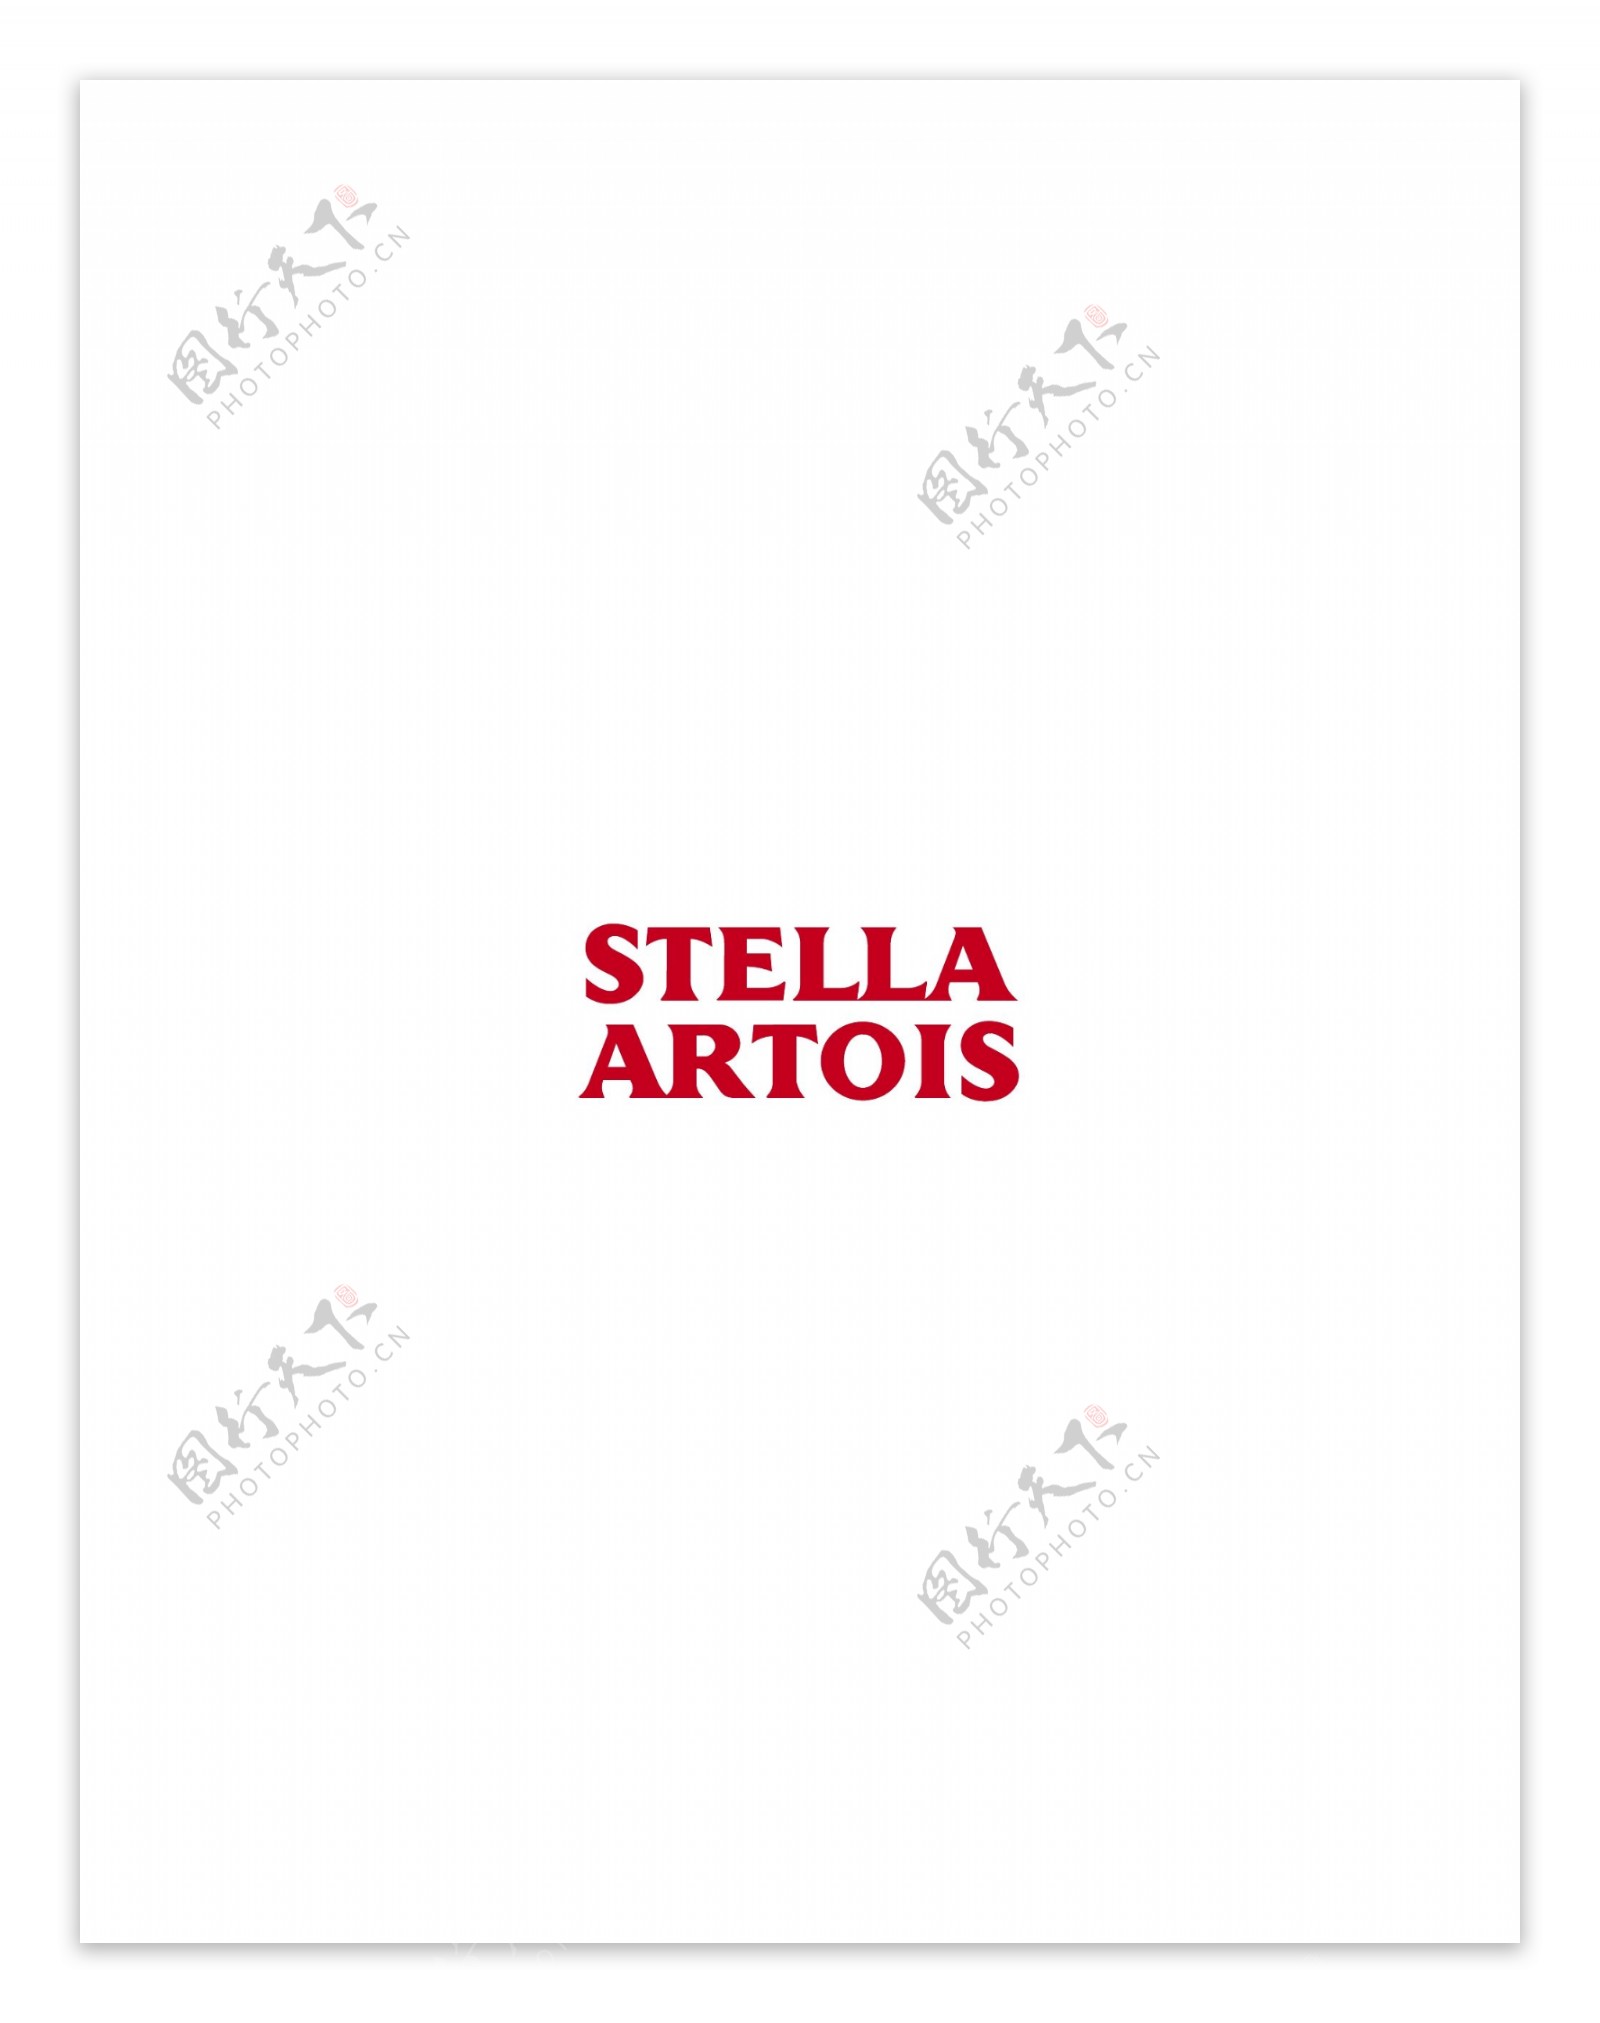 StellaArtoislogo设计欣赏国外知名公司标志范例StellaArtois下载标志设计欣赏